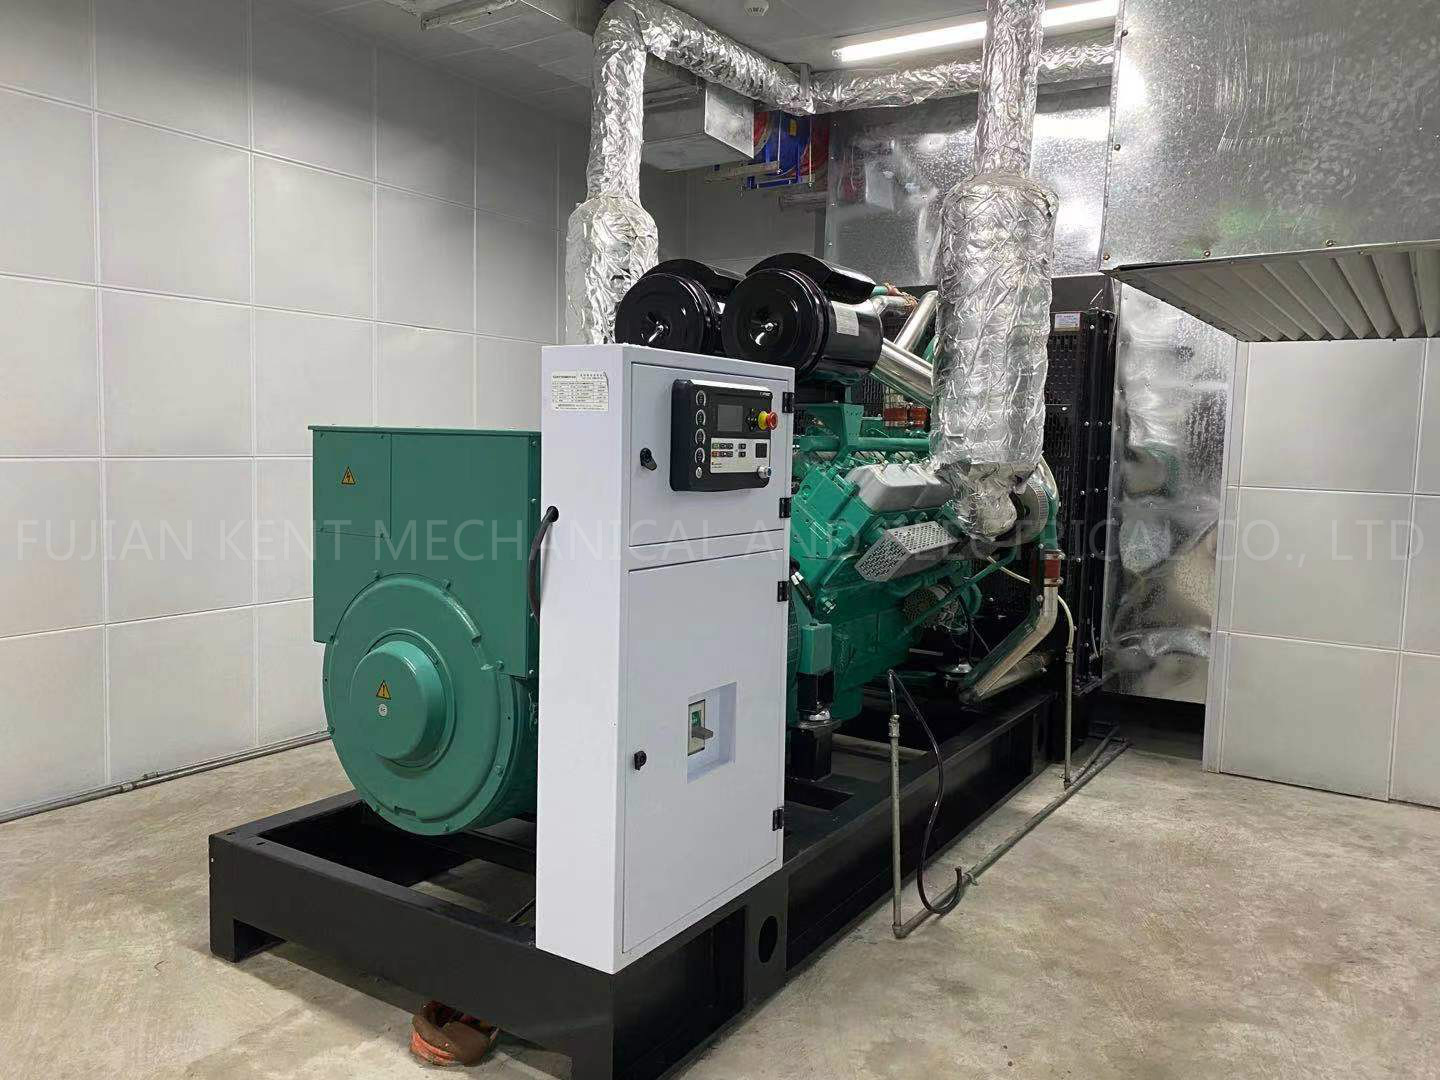 400kW Kentpower Diesel Generator for School Project